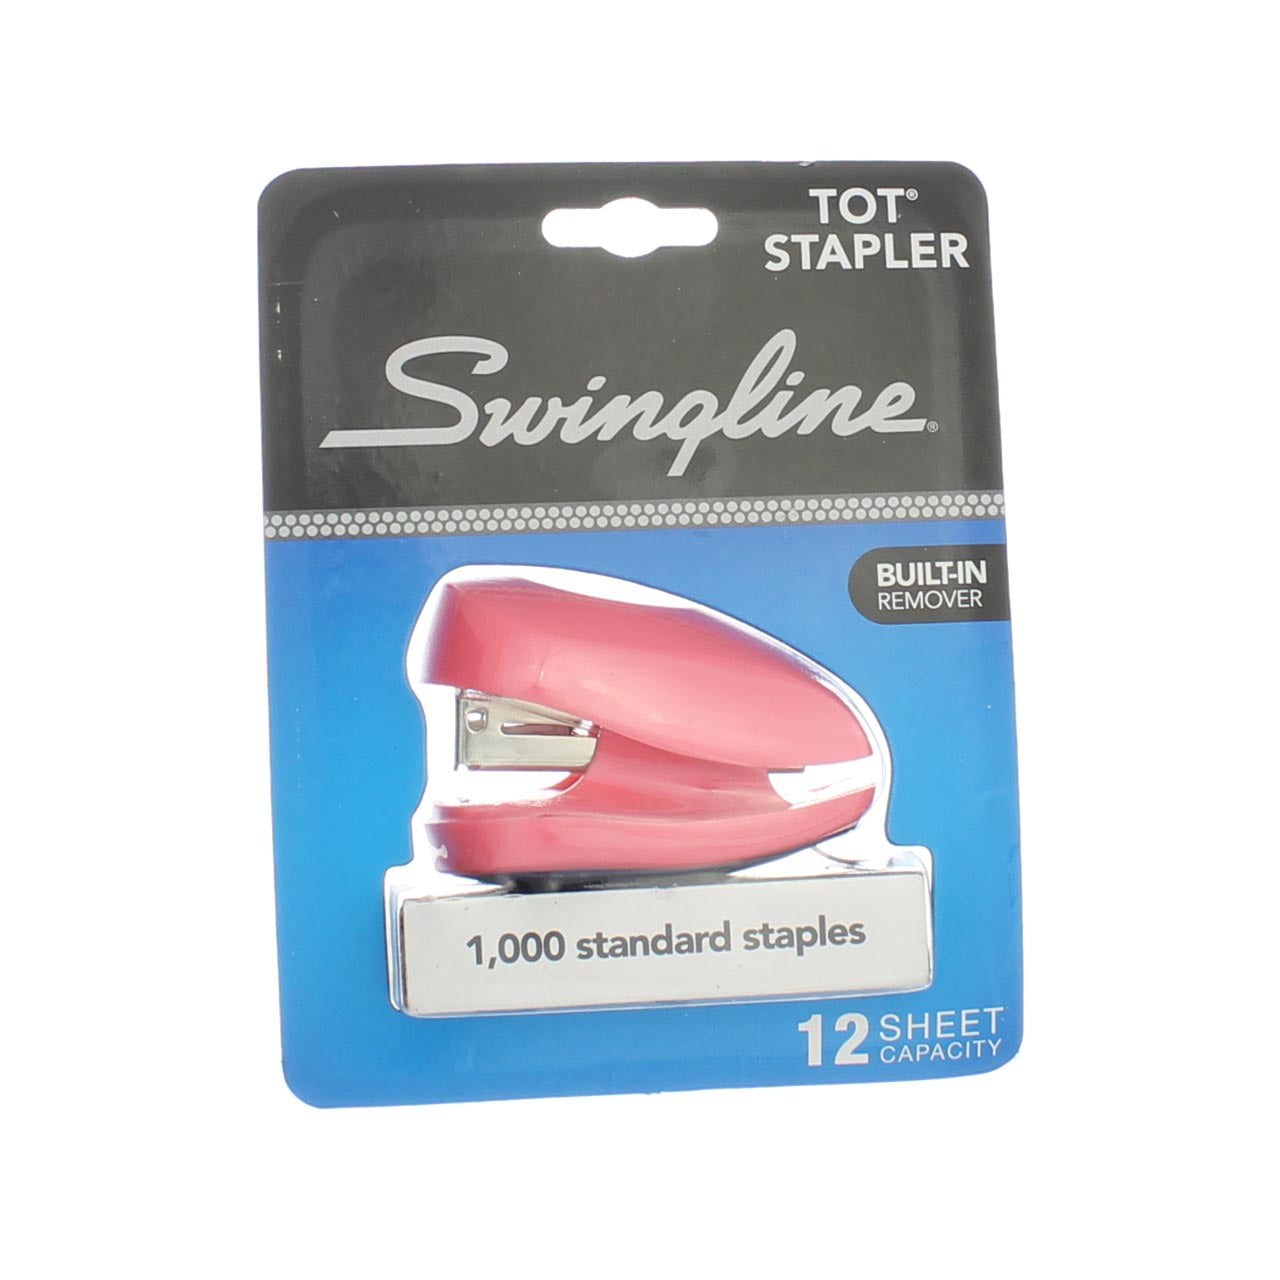 Swingline Tot Stapler, Built-in Staple Remover, 12 Sheets, Purple 